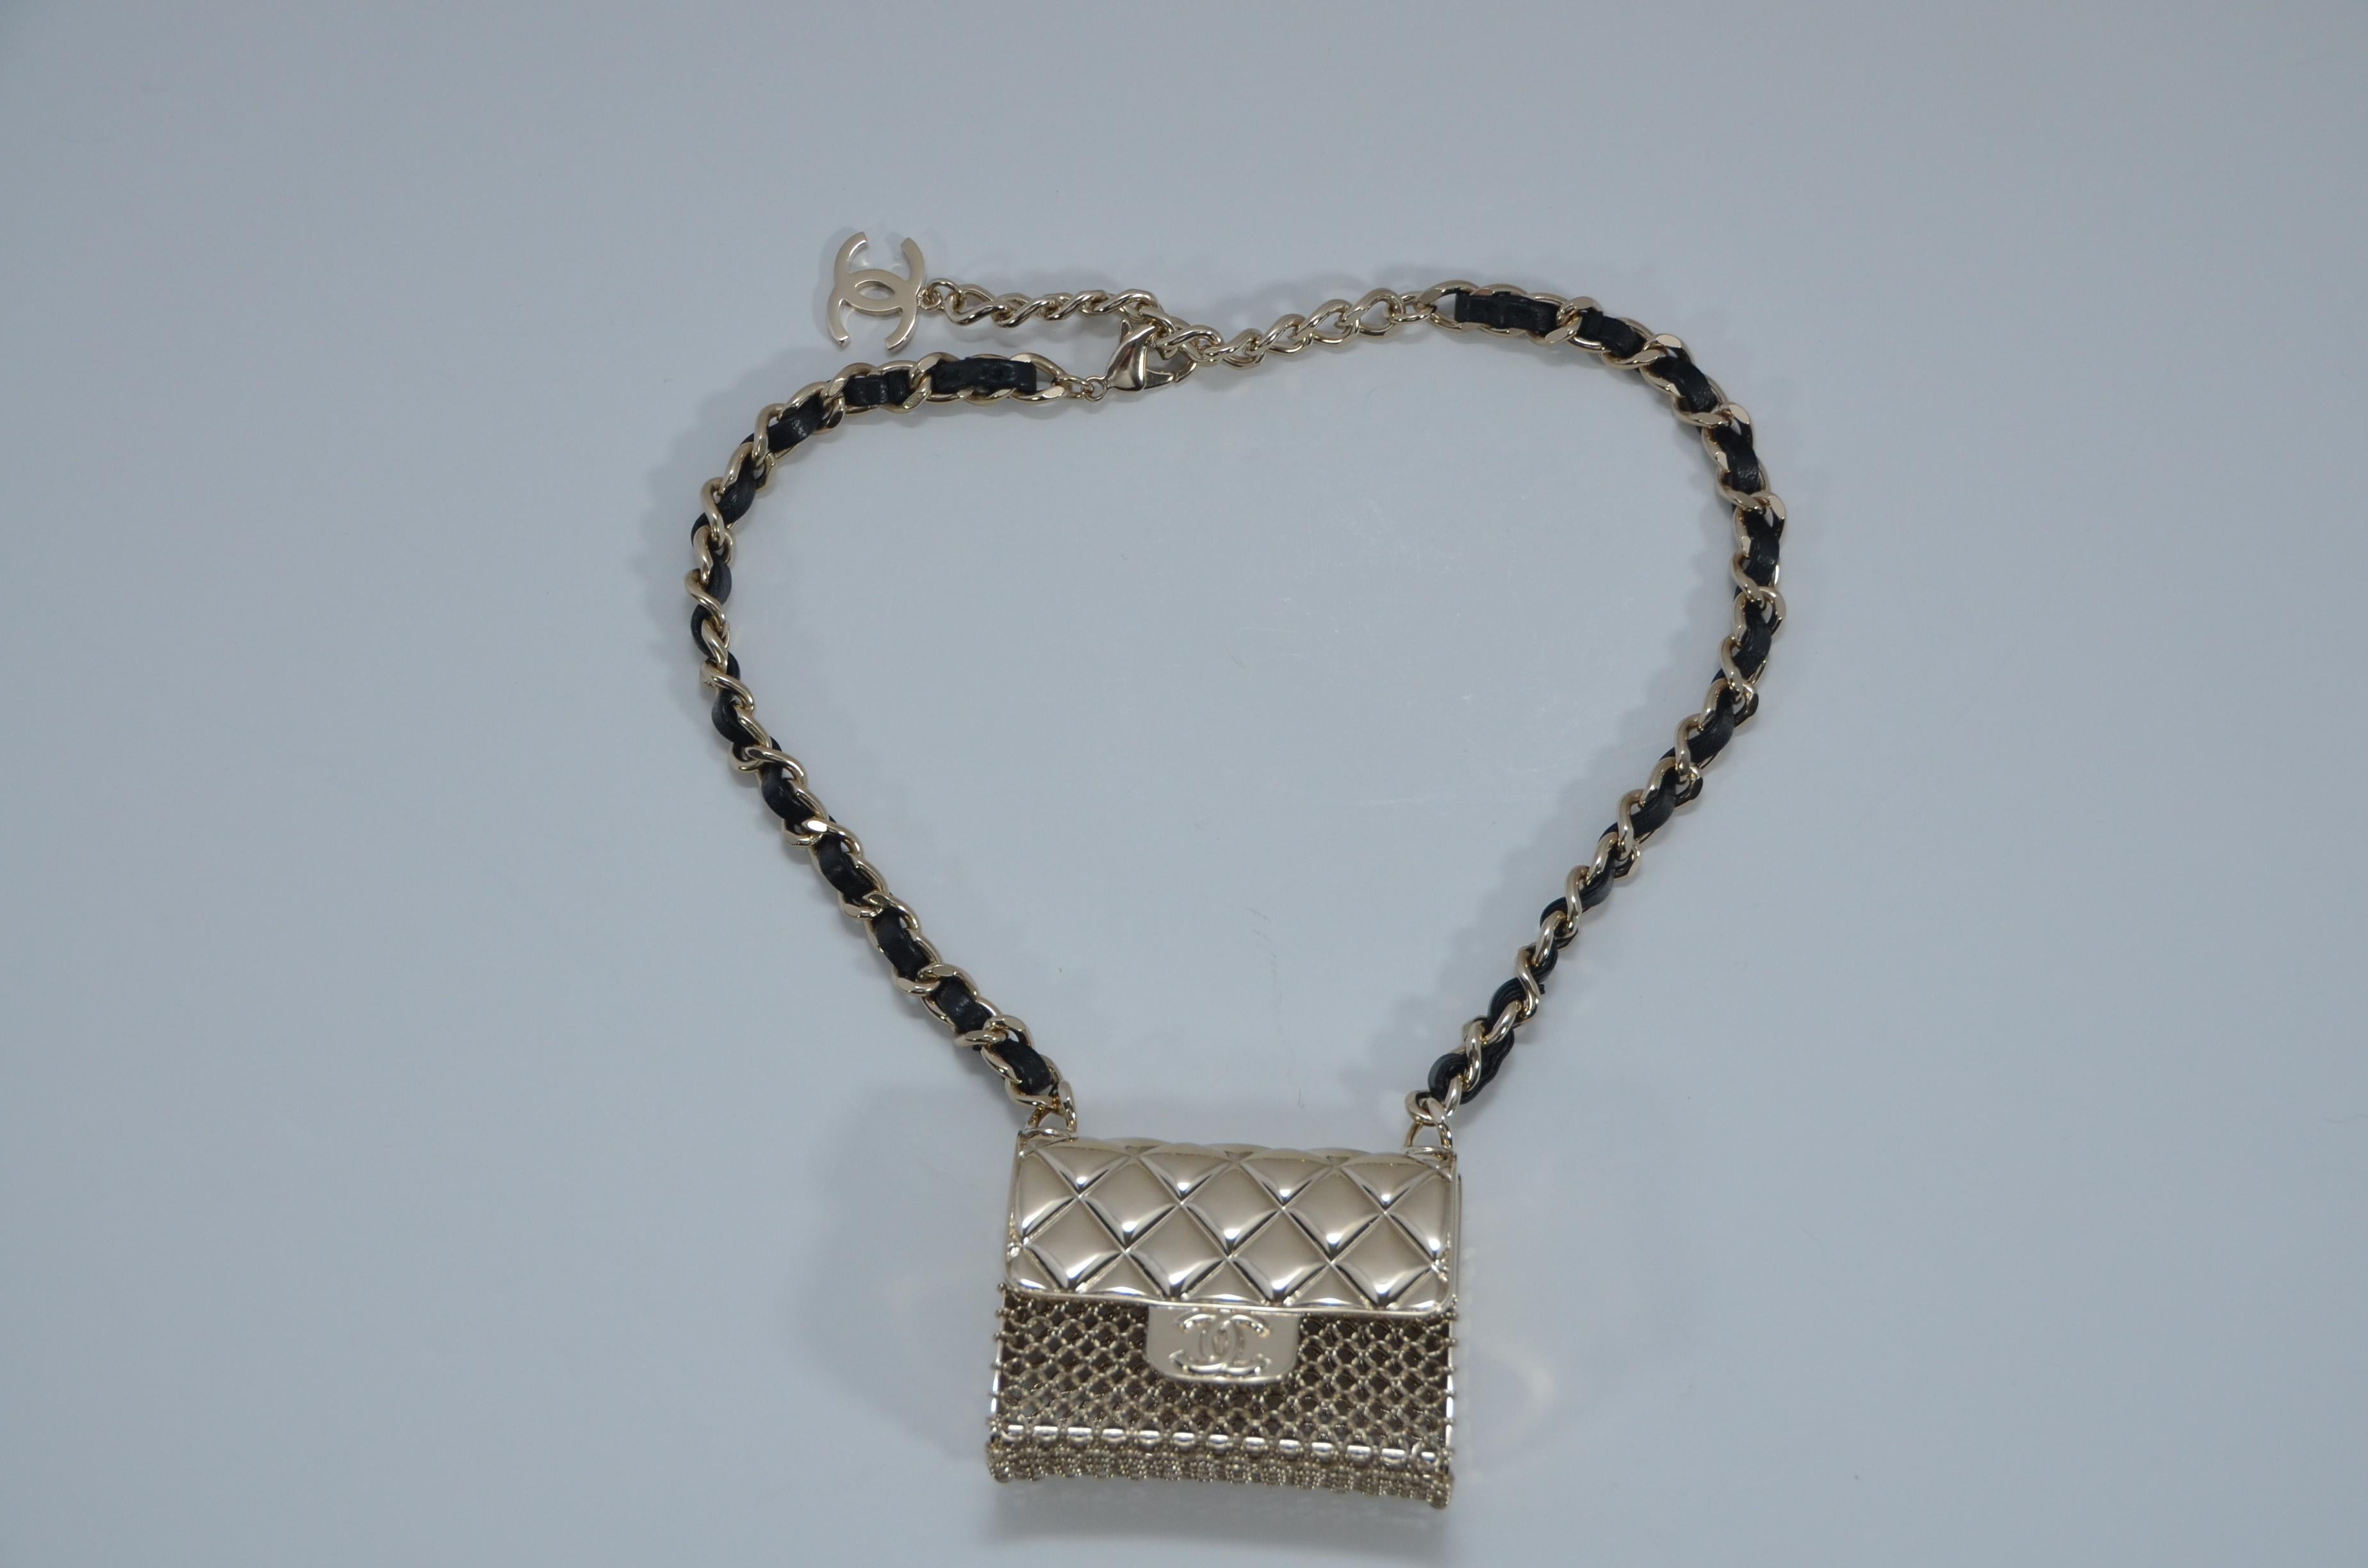 100% AUTHENTISCH Chanel Mini-Handtasche Halskette 
Die Originalquittung mit den persönlichen Daten wird auf Anfrage zugeschickt.
Goldfarbene Metallbeschläge mit gewebtem Lammleder 
Mini-Geldbörse ist  .  funktionstüchtig und kann geöffnet werden